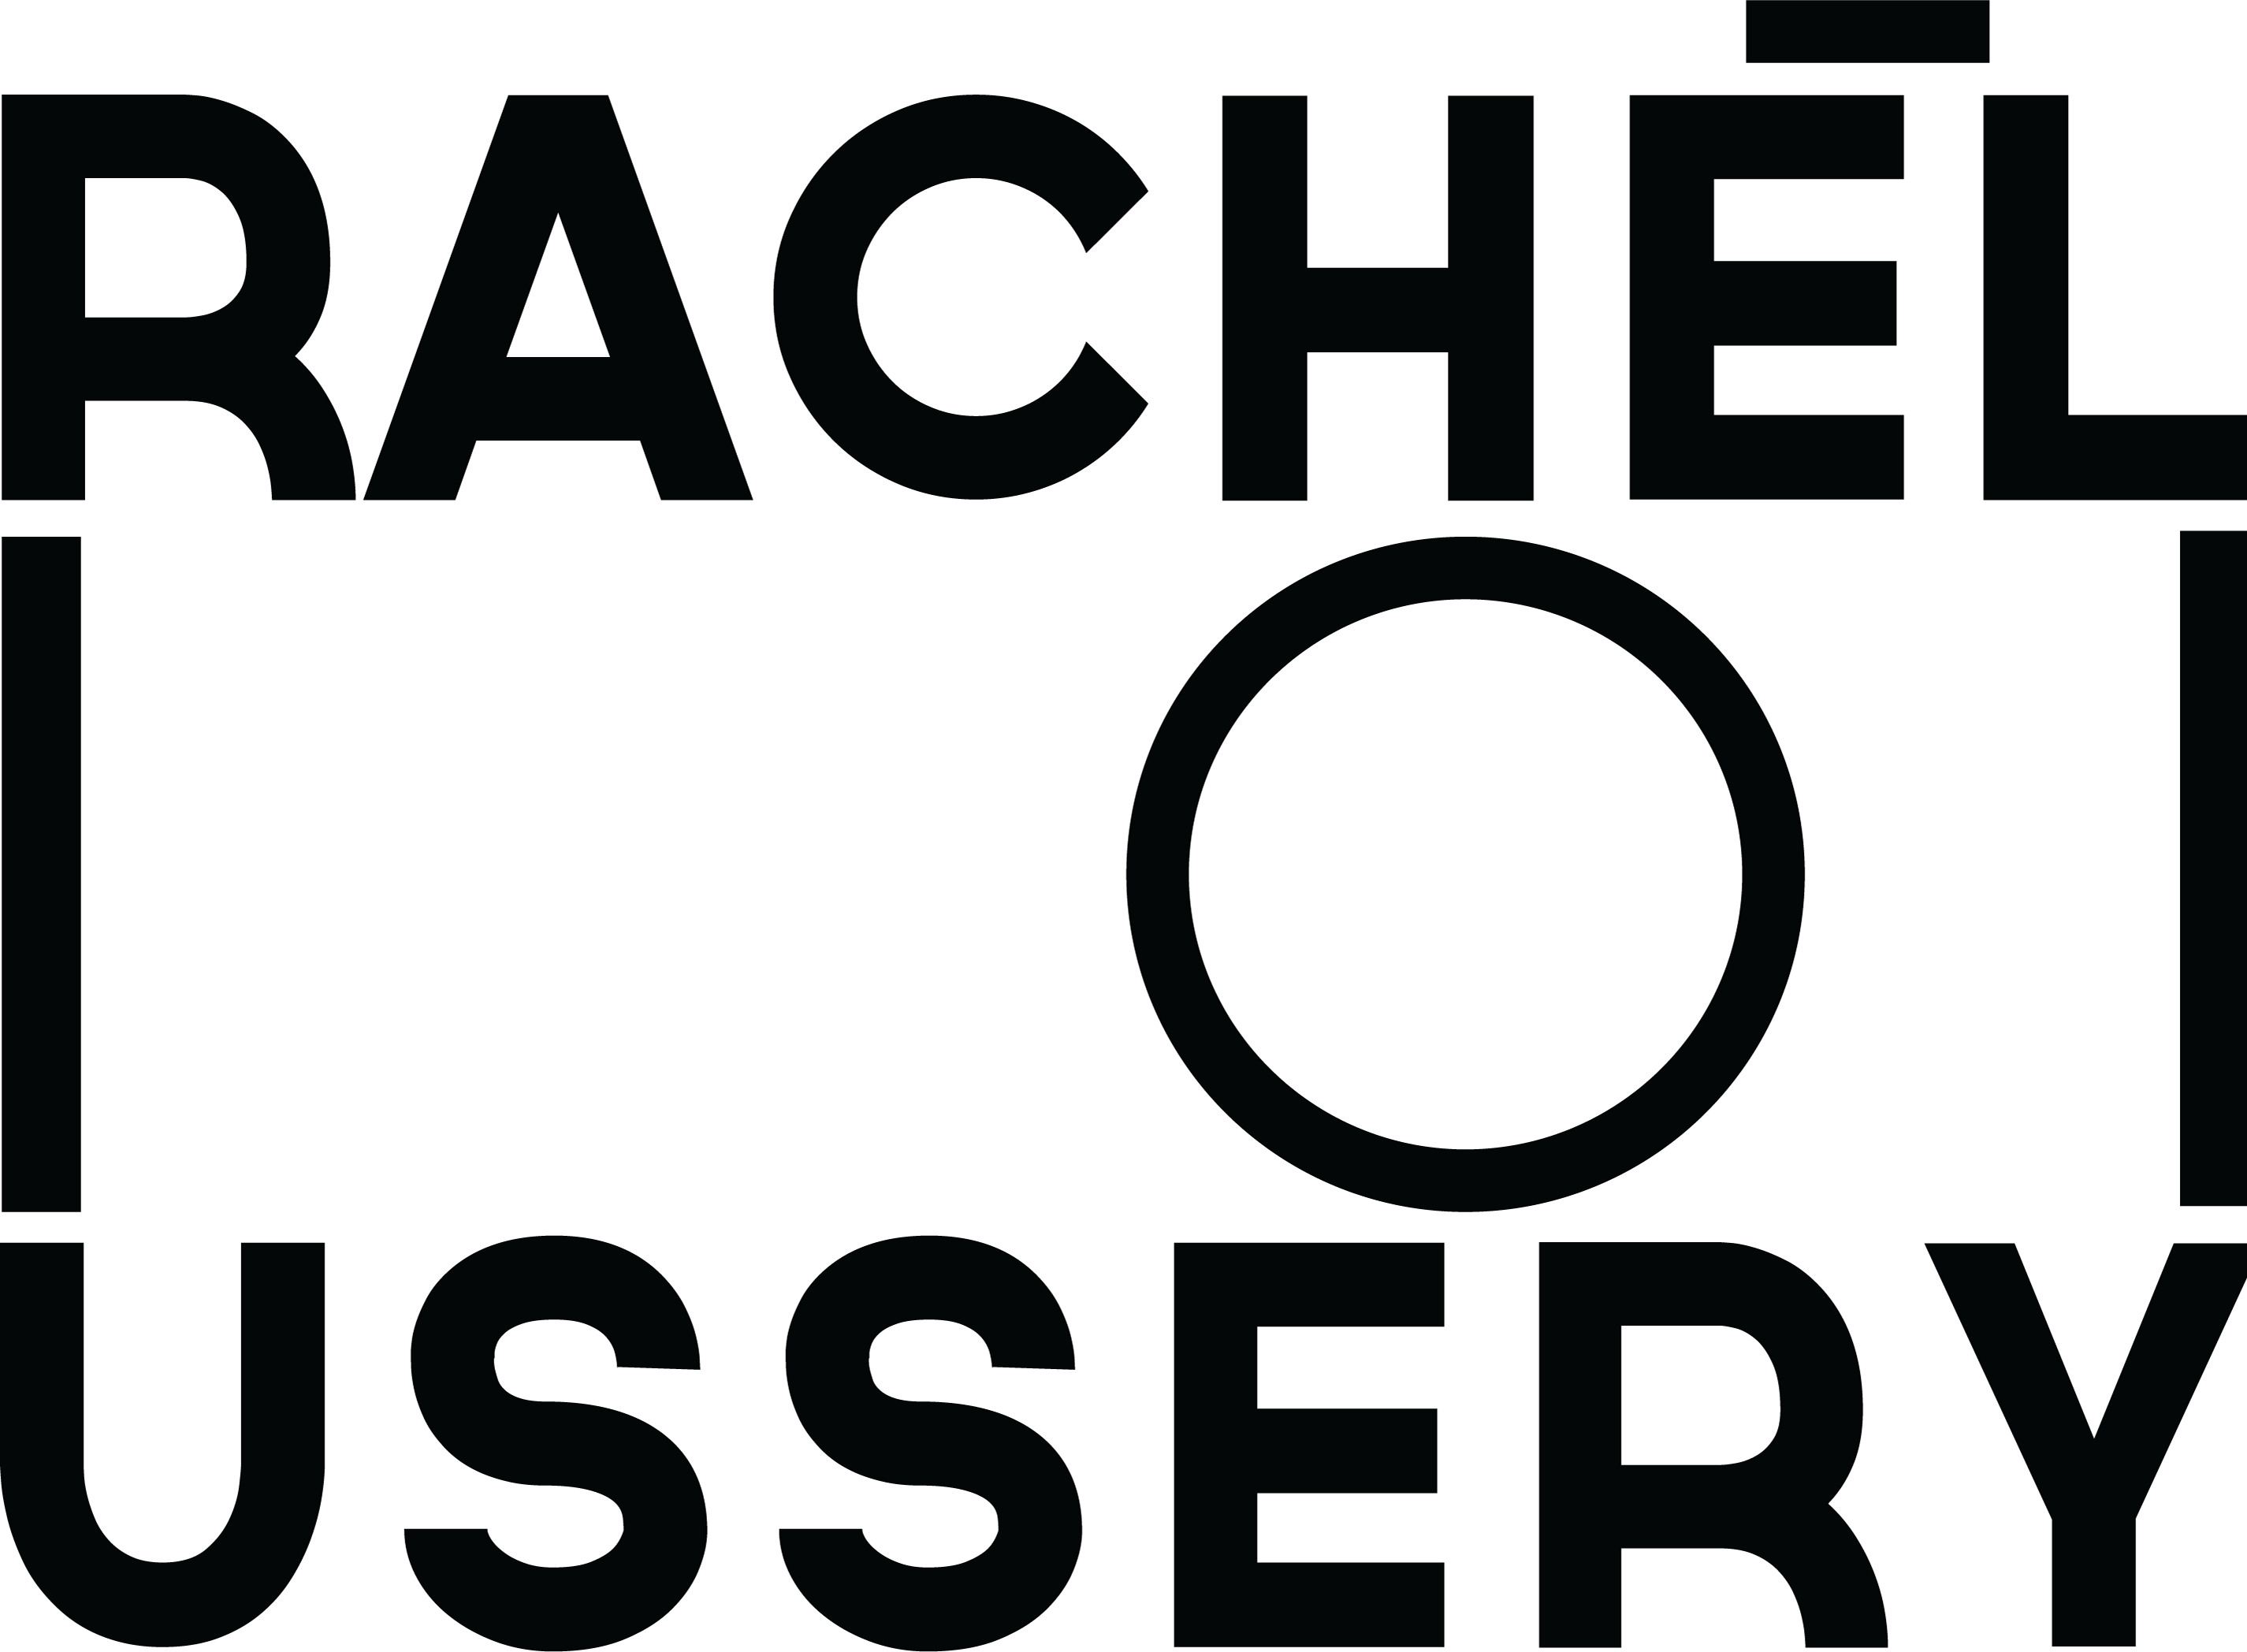 Rachel Ussery